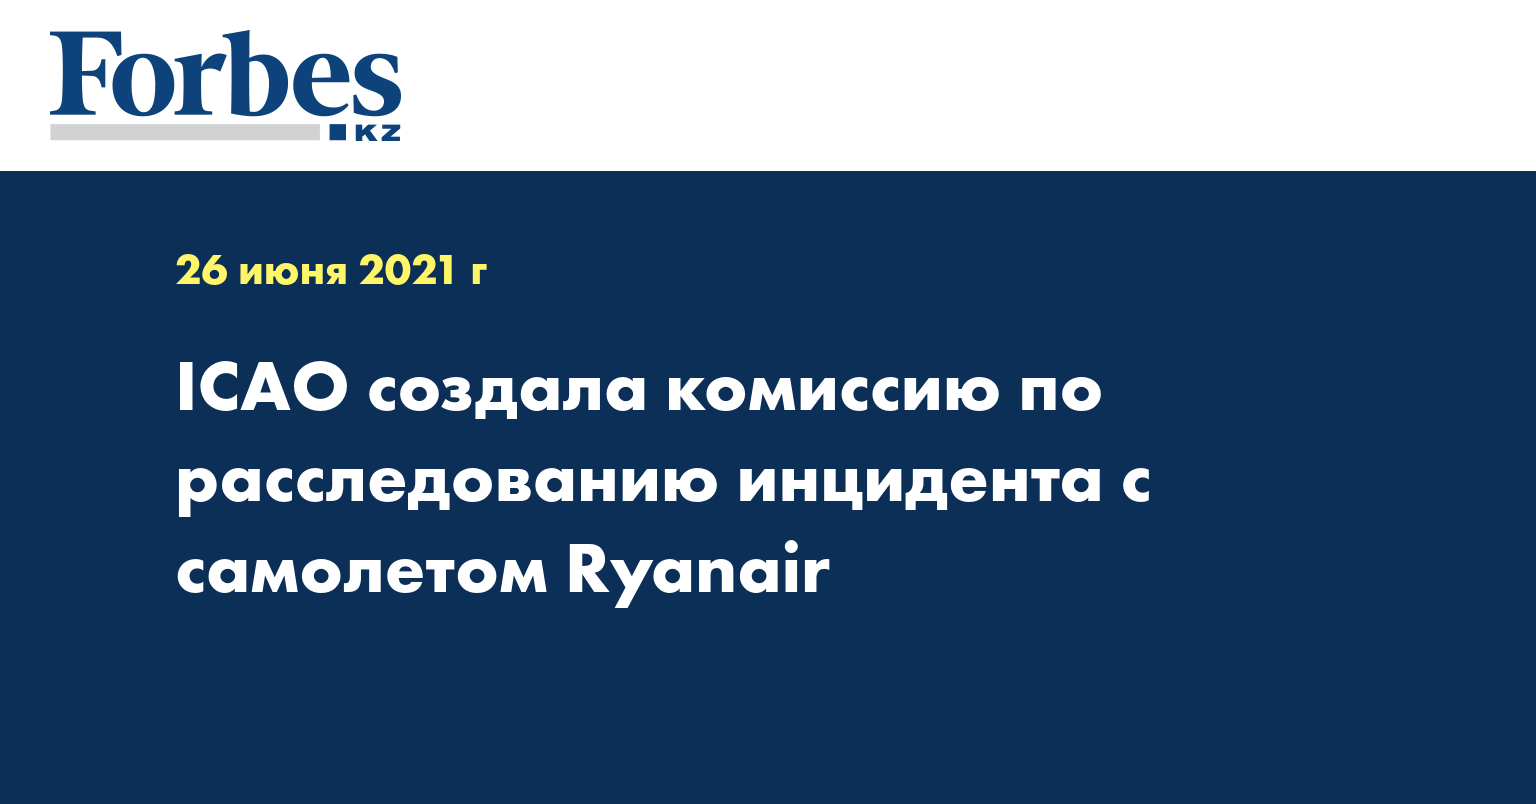 ICAO создала комиссию по расследованию инцидента с самолетом Ryanair